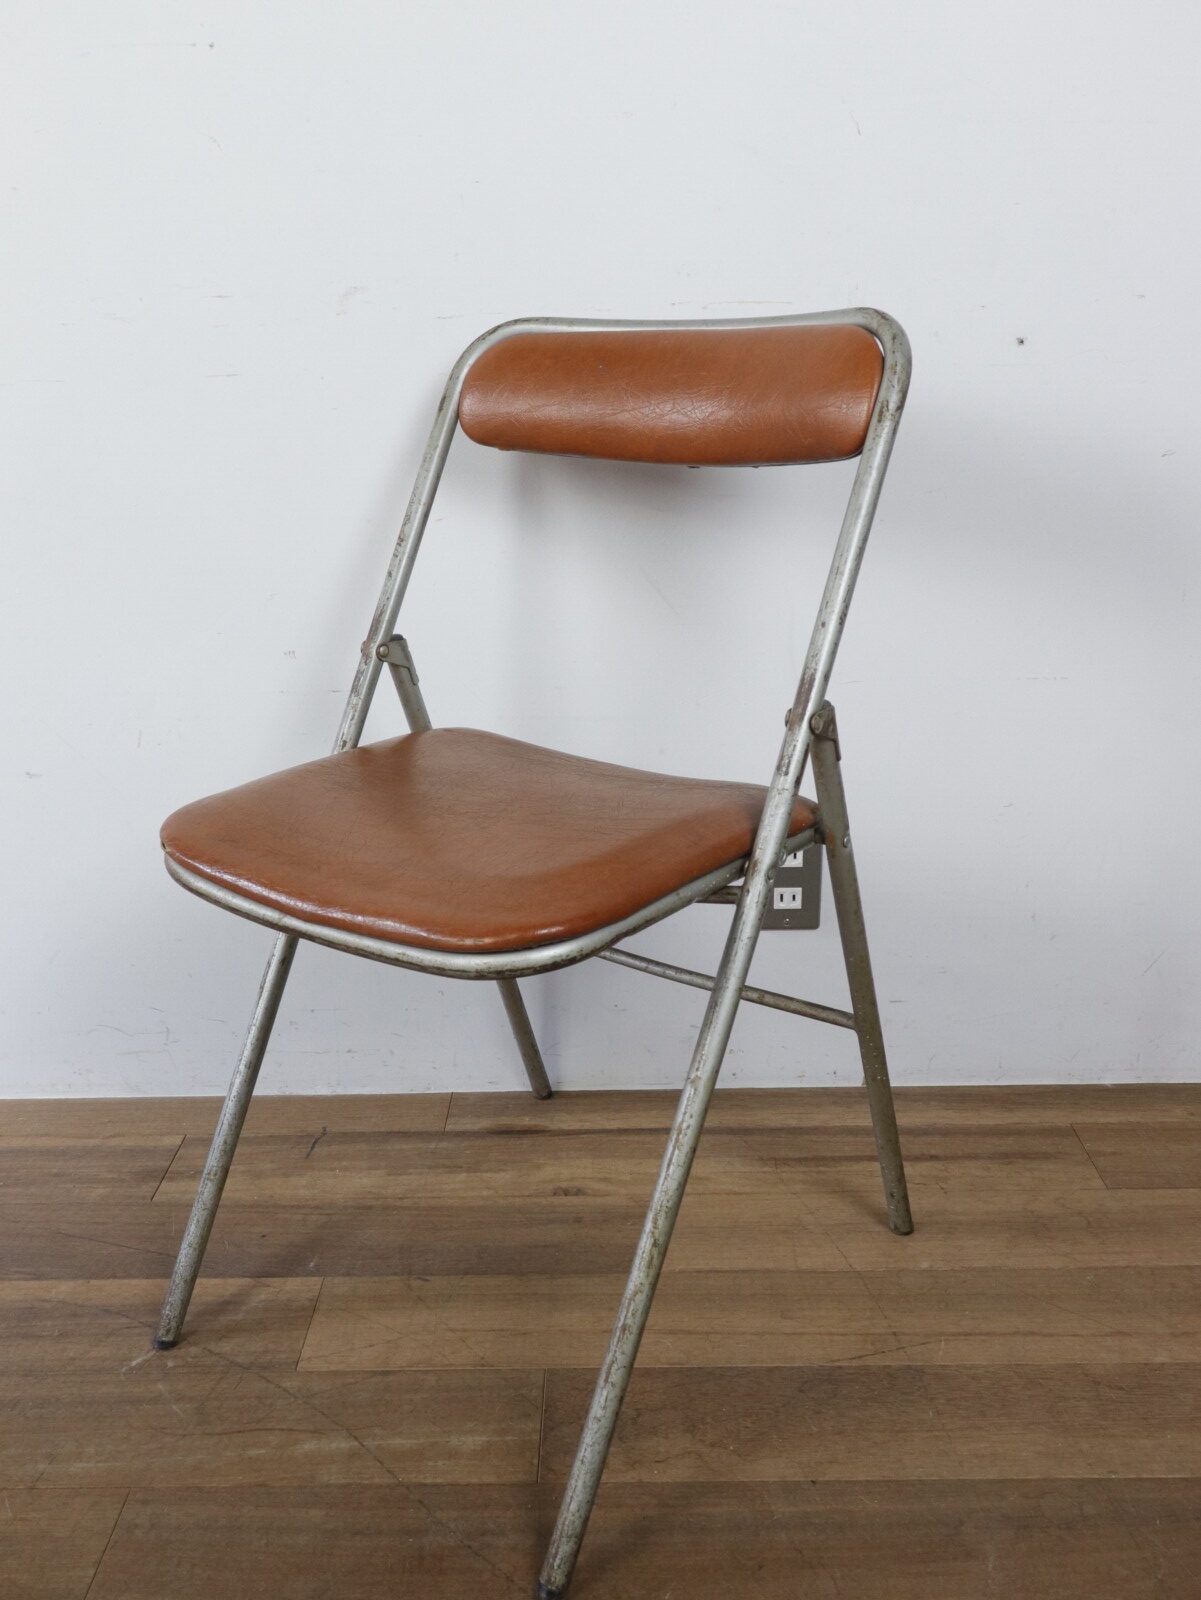 1950's,Souvignet,folding chair,France,